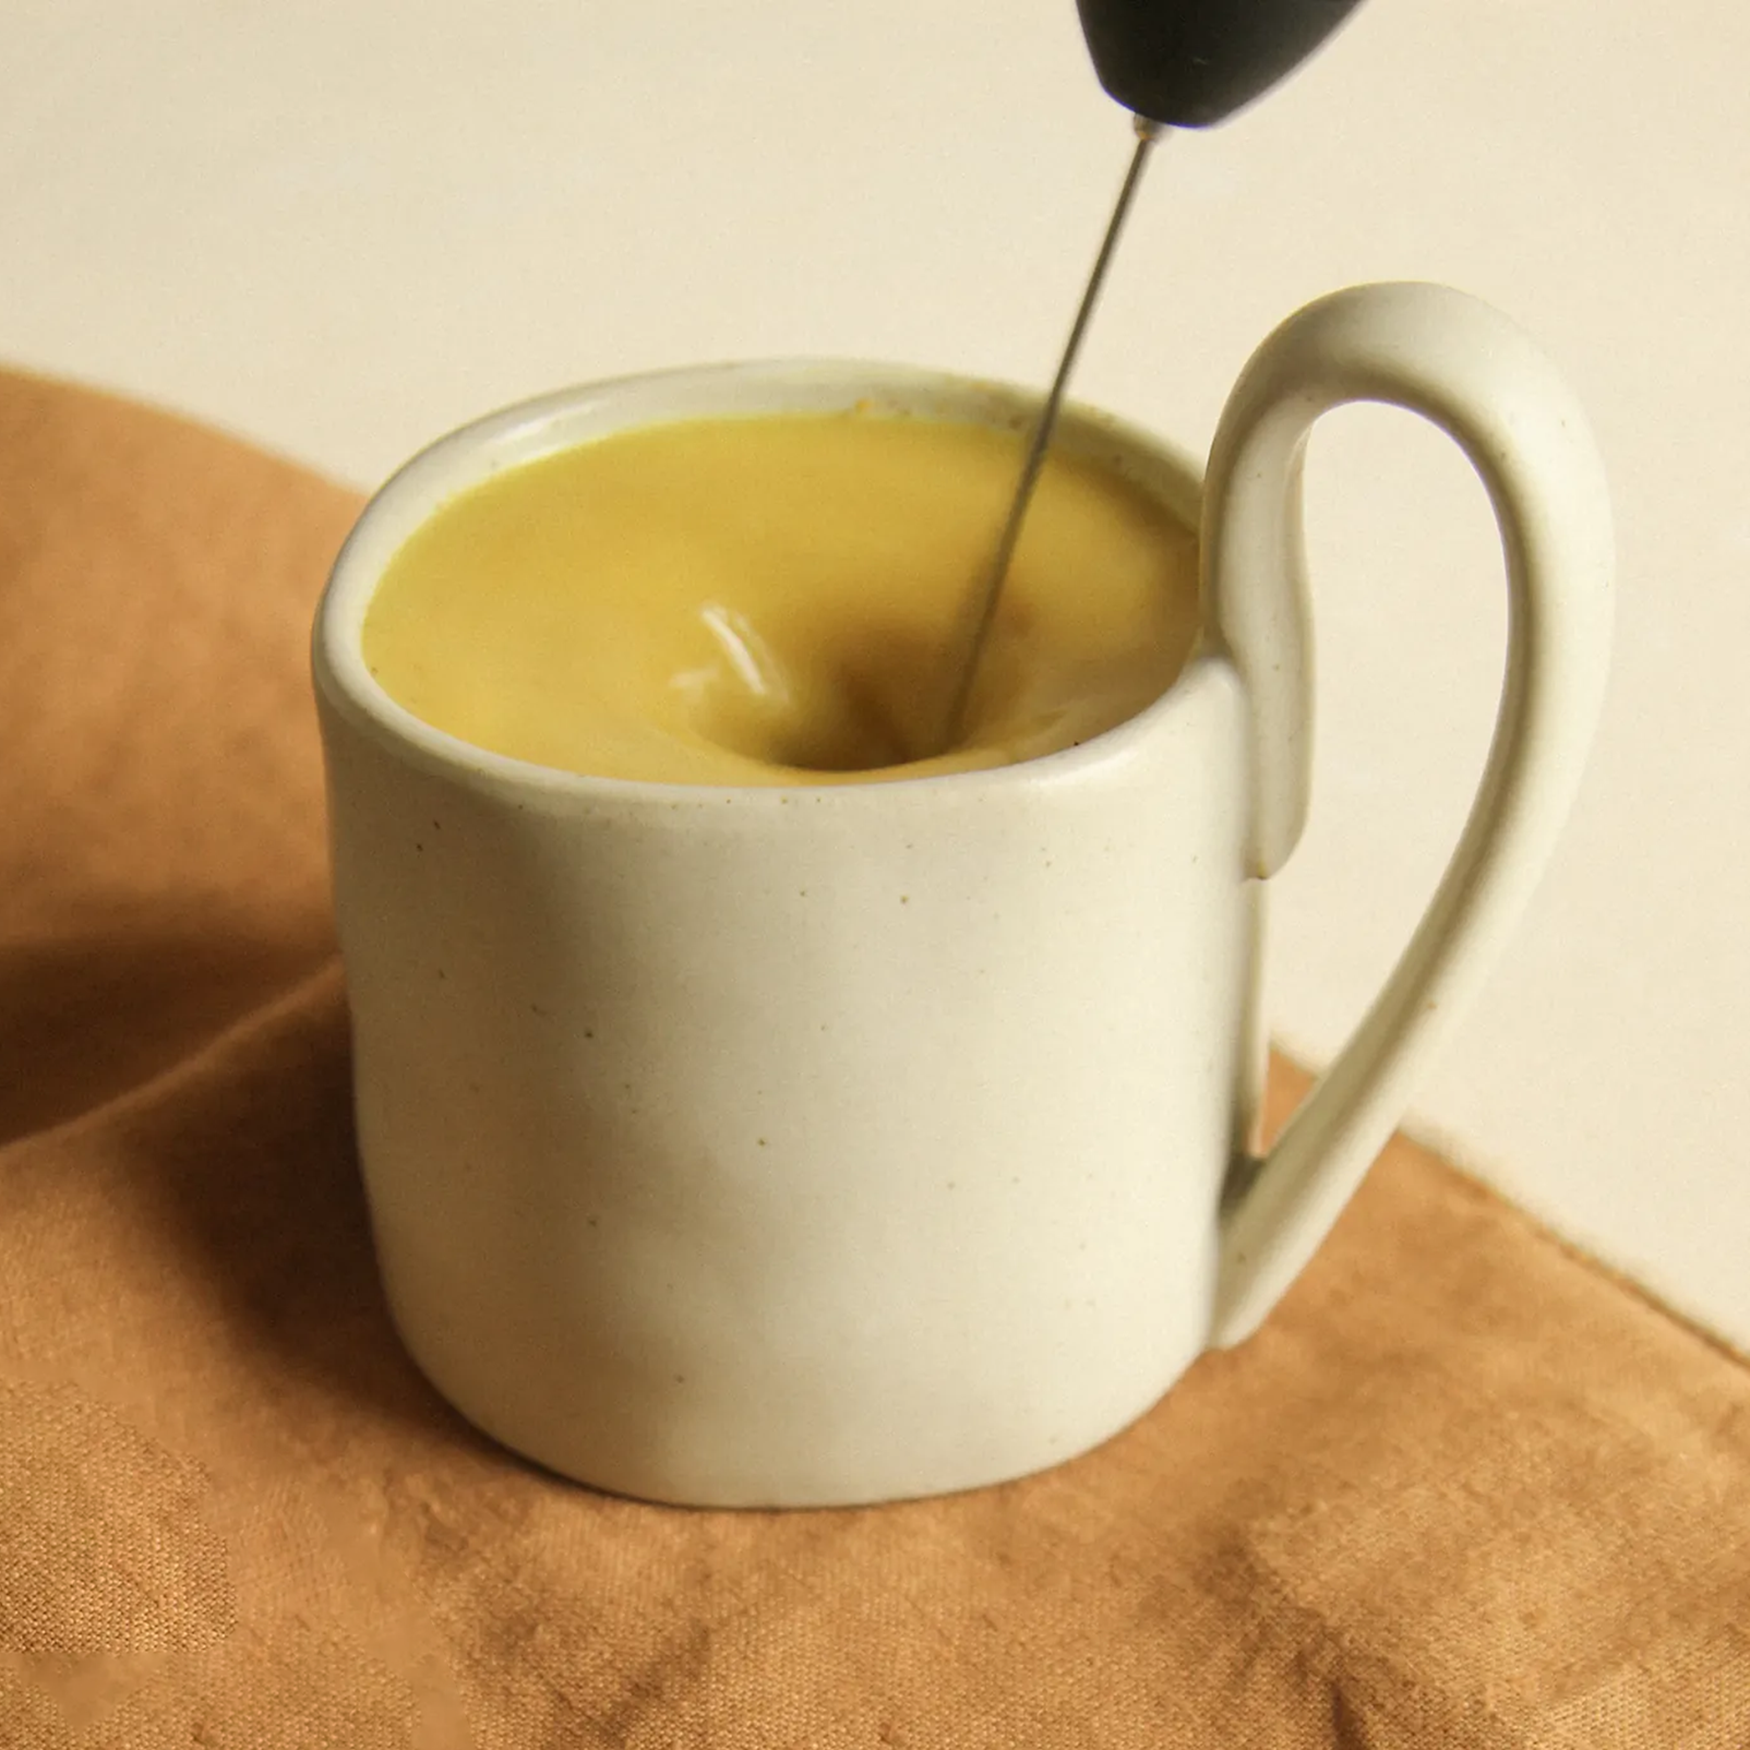 TRADITON - le golden latte aux adaptogènes (Doypack 100g) Huages